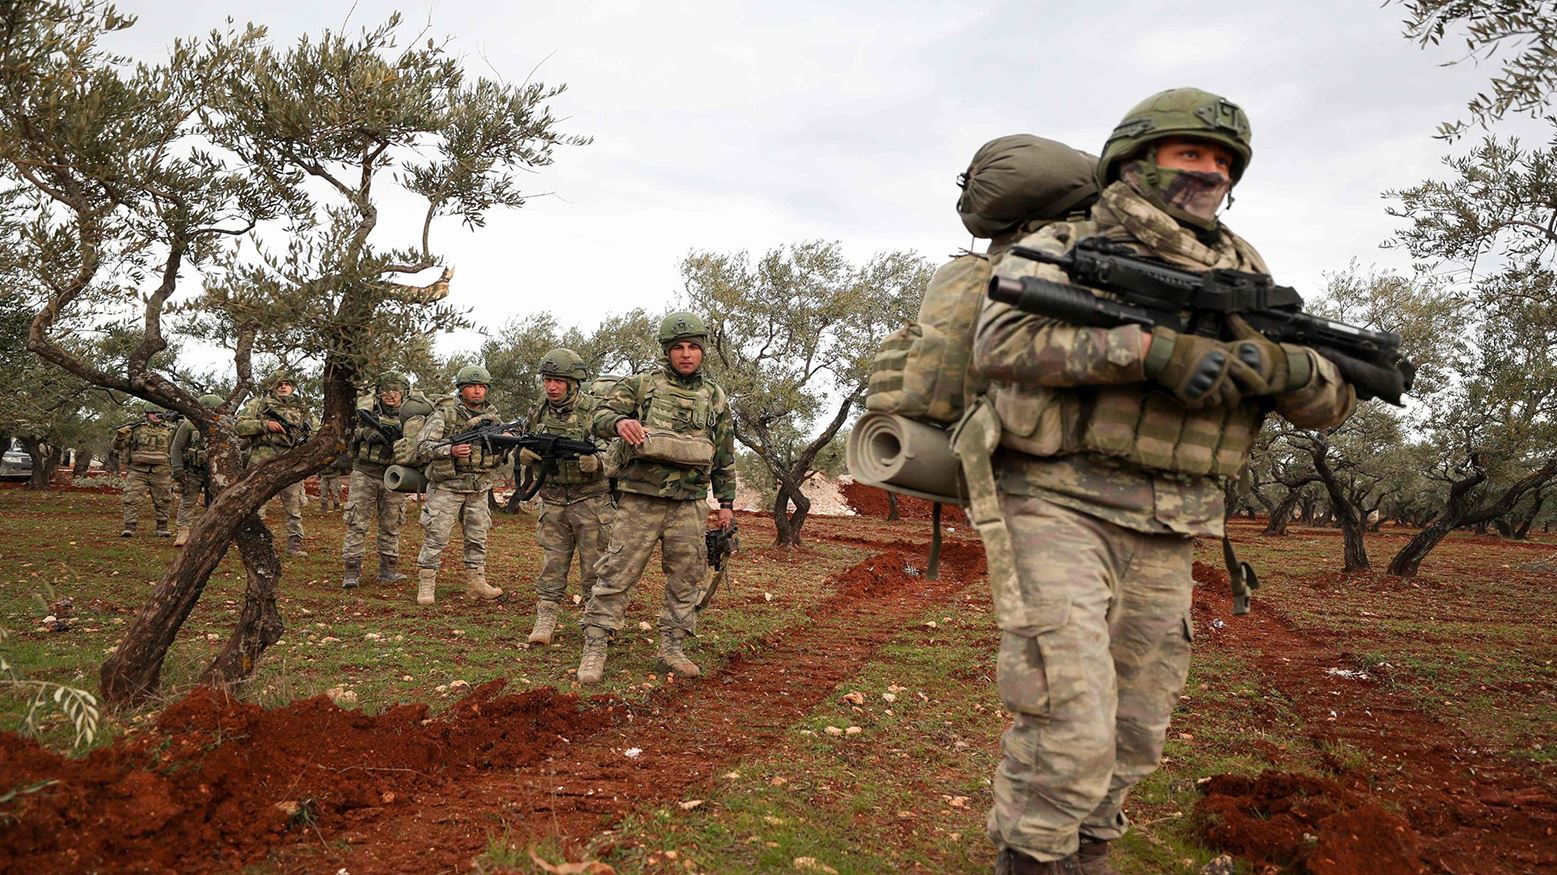 Turkish soldiers near Idlib in southwestern Syria, Feb. 10, 2020 (Photo: AFP)